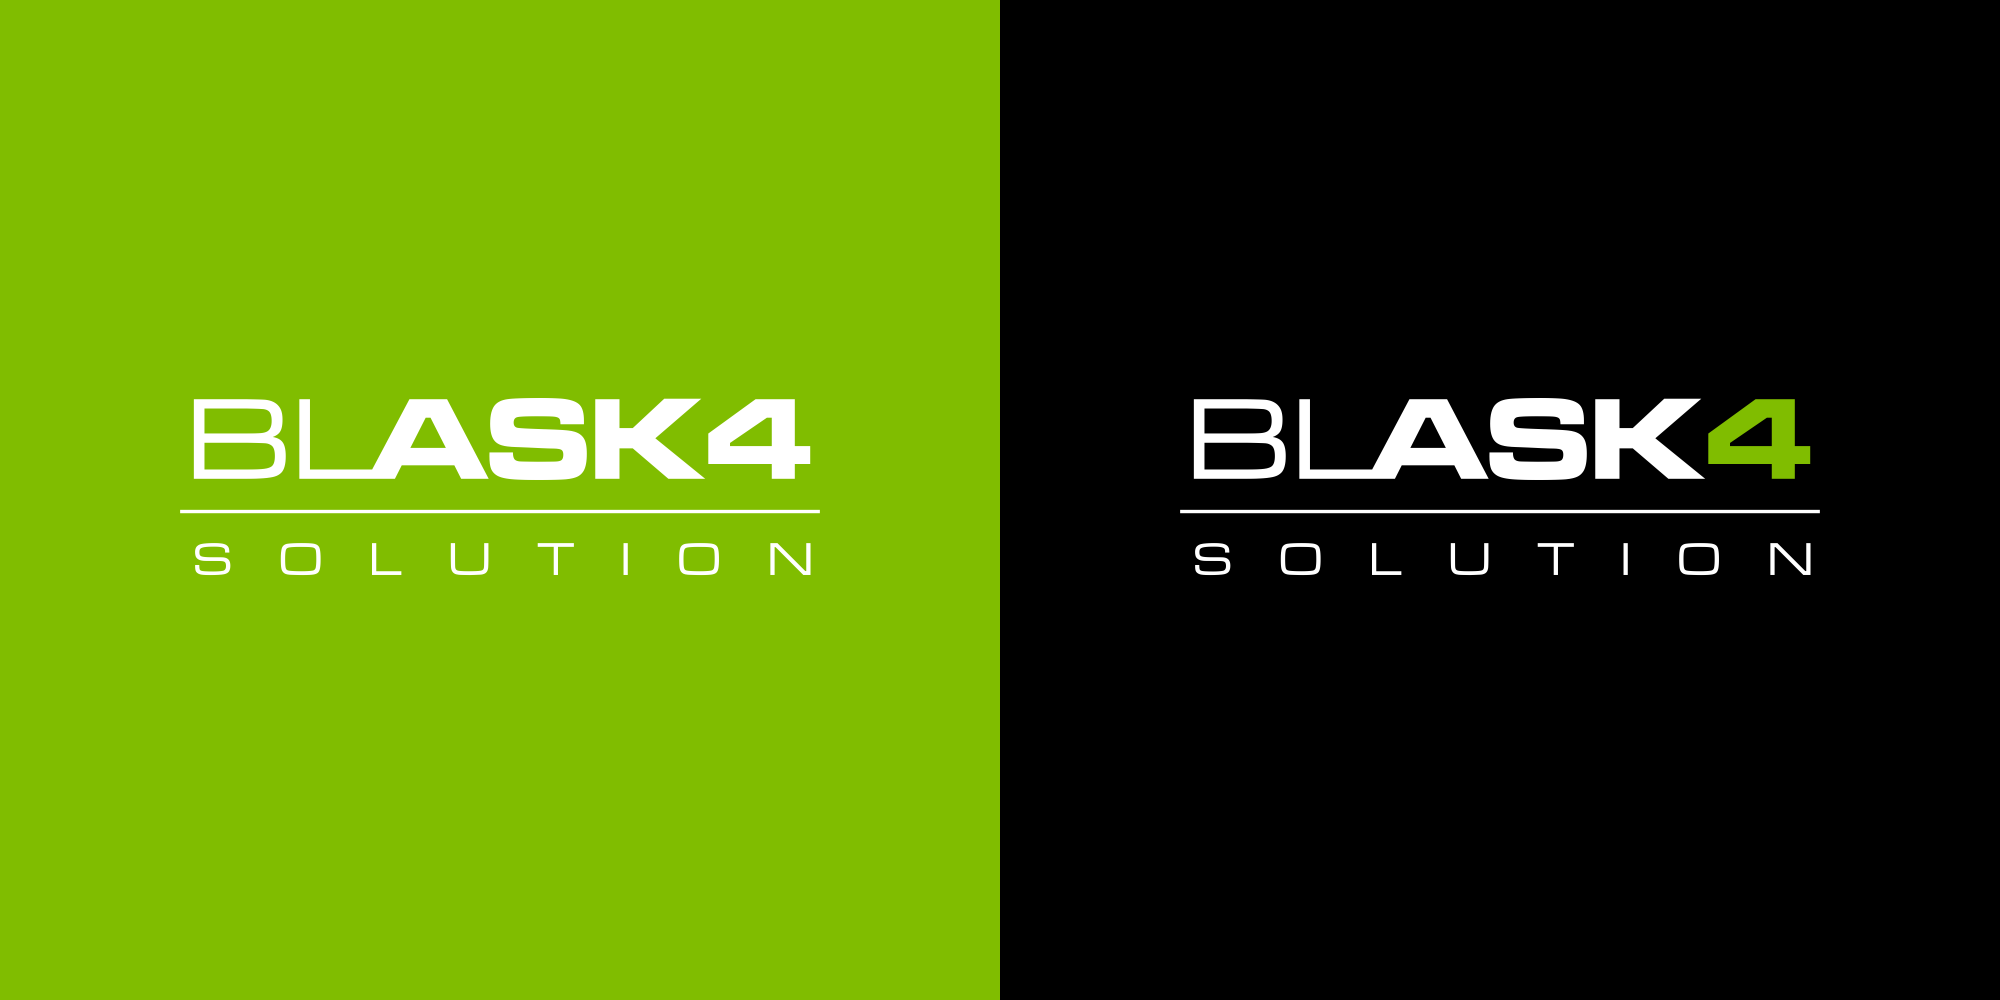 Logo Design-blask4solution auf grünem und schwarzem Hintergrund.